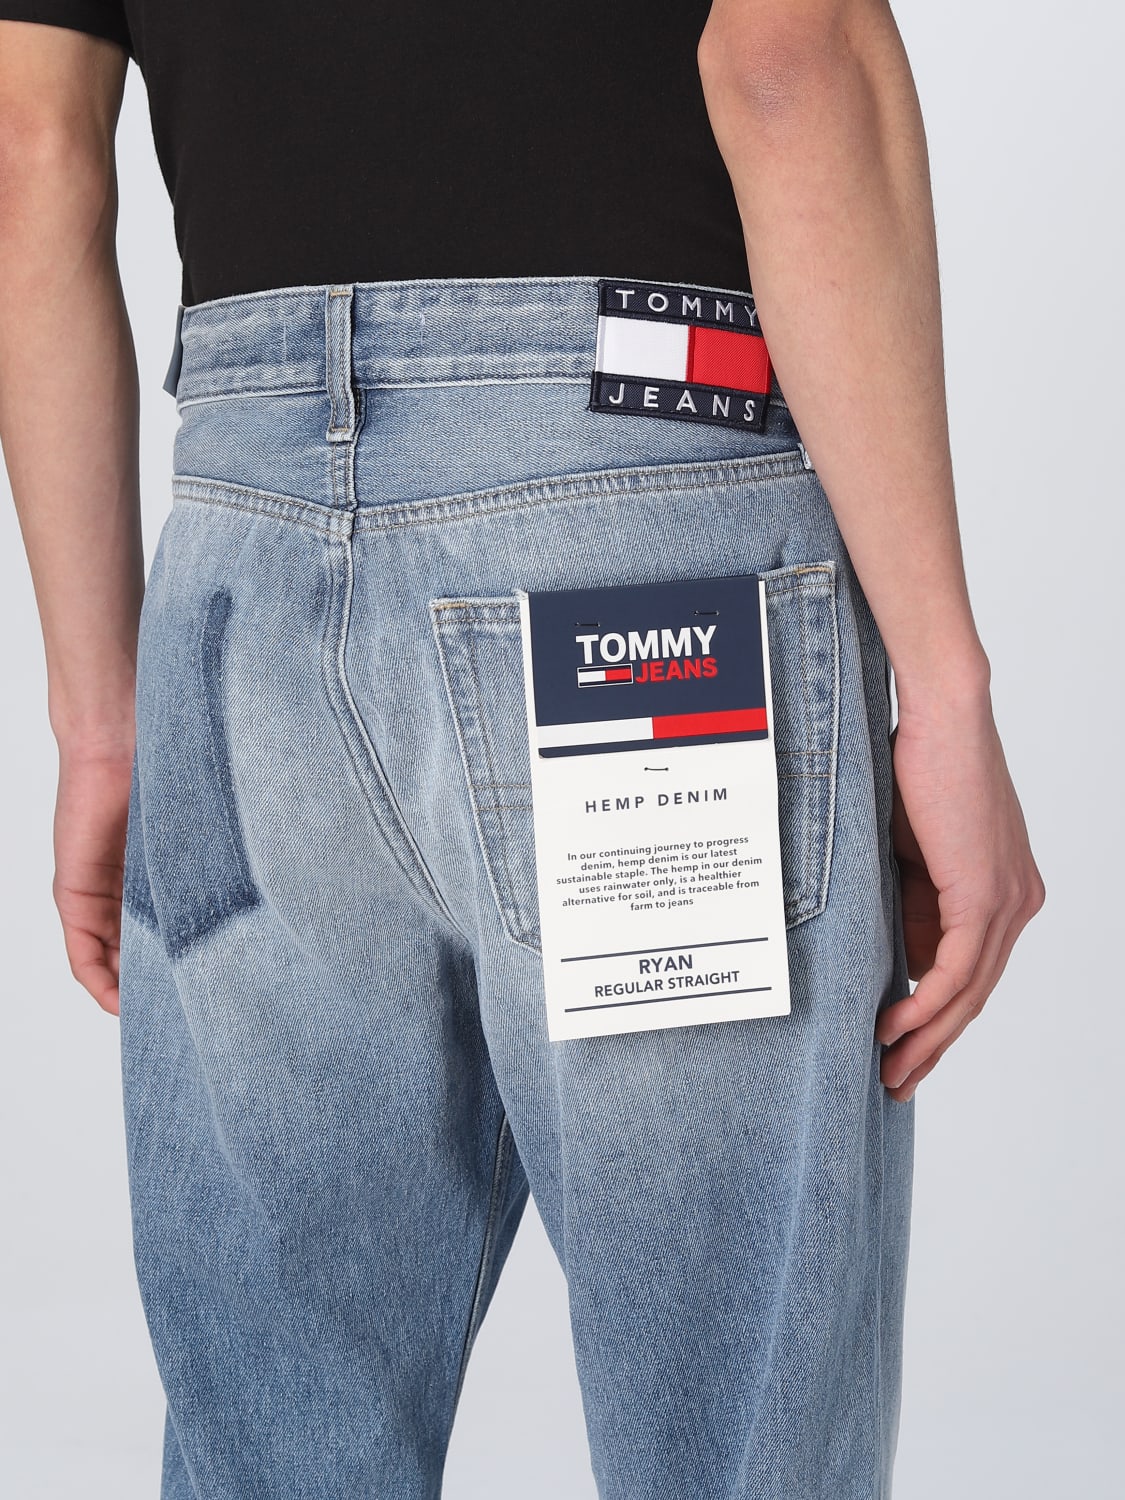 TOMMY JEANS Outlet: Jeans men - Denim  TOMMY JEANS jeans DM0DM16278 online  at